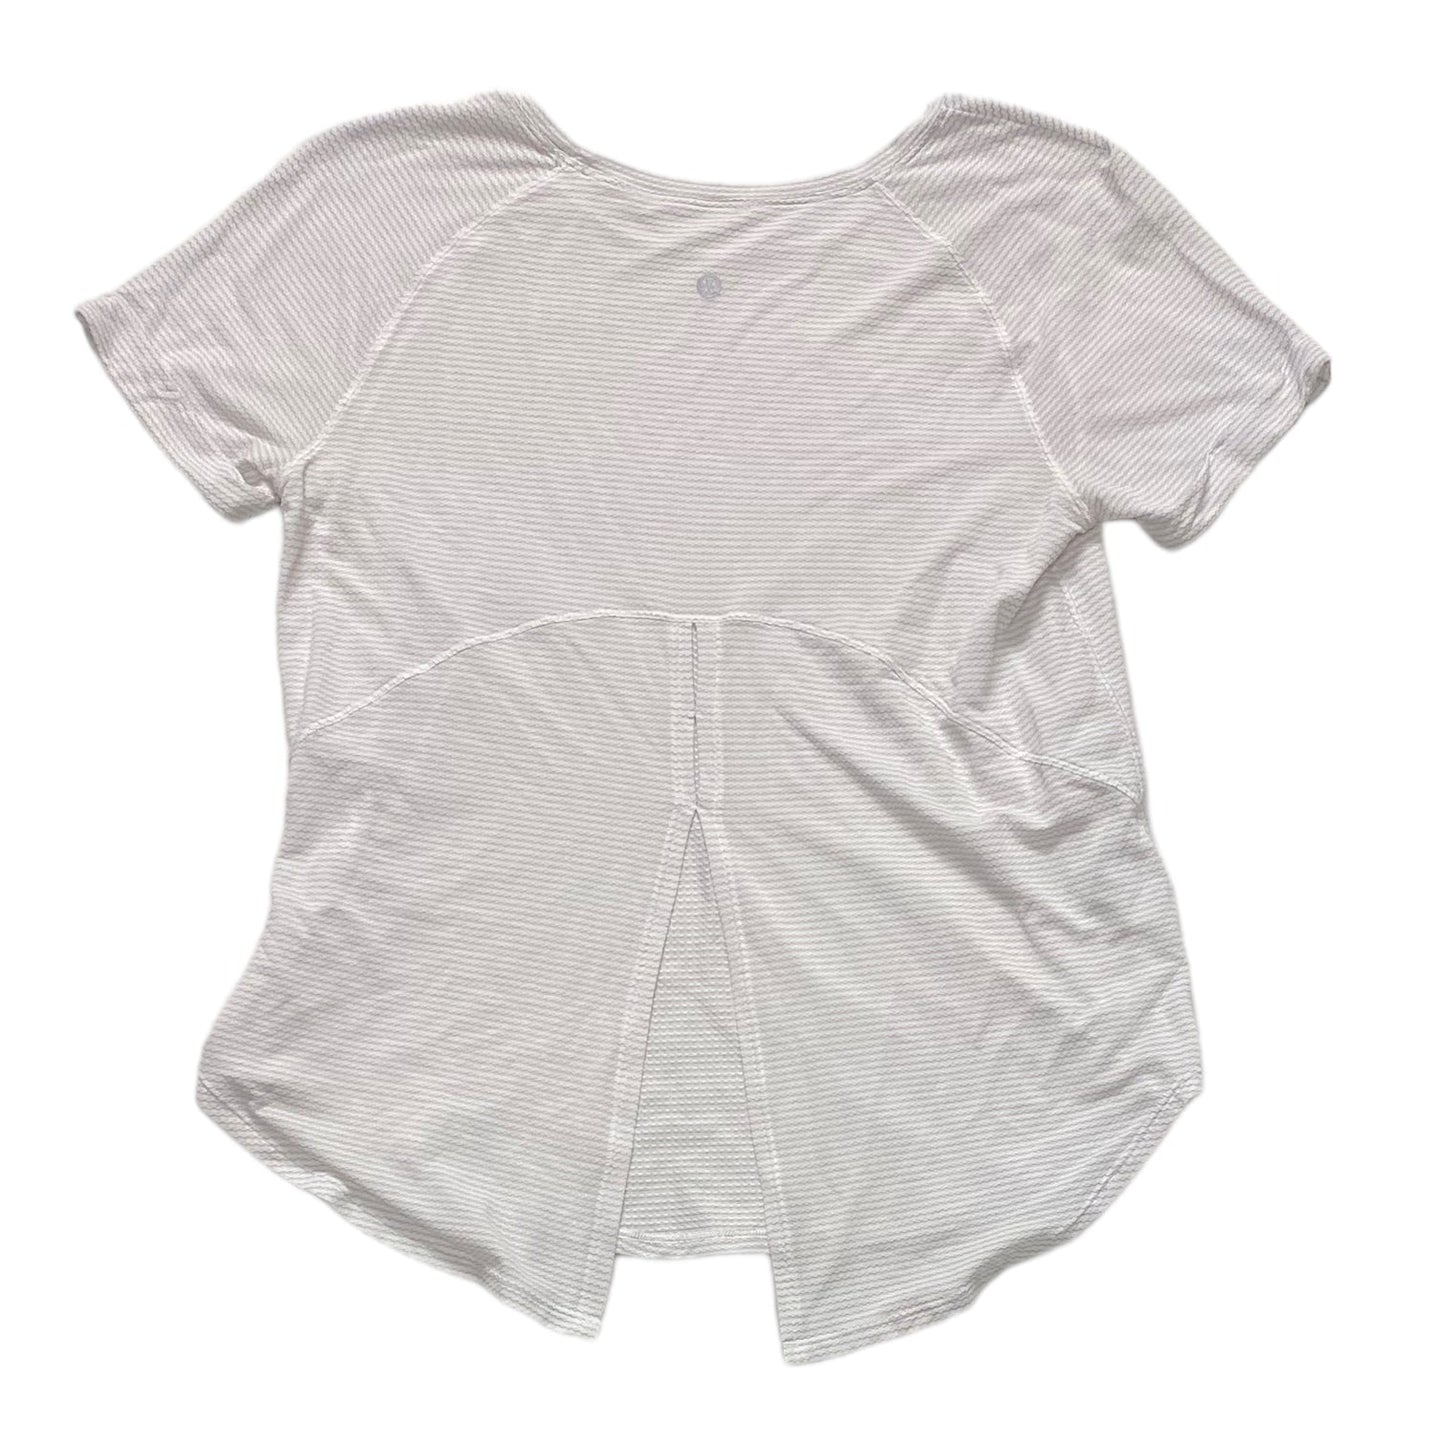 White Athletic Top Short Sleeve Lululemon, Size 8